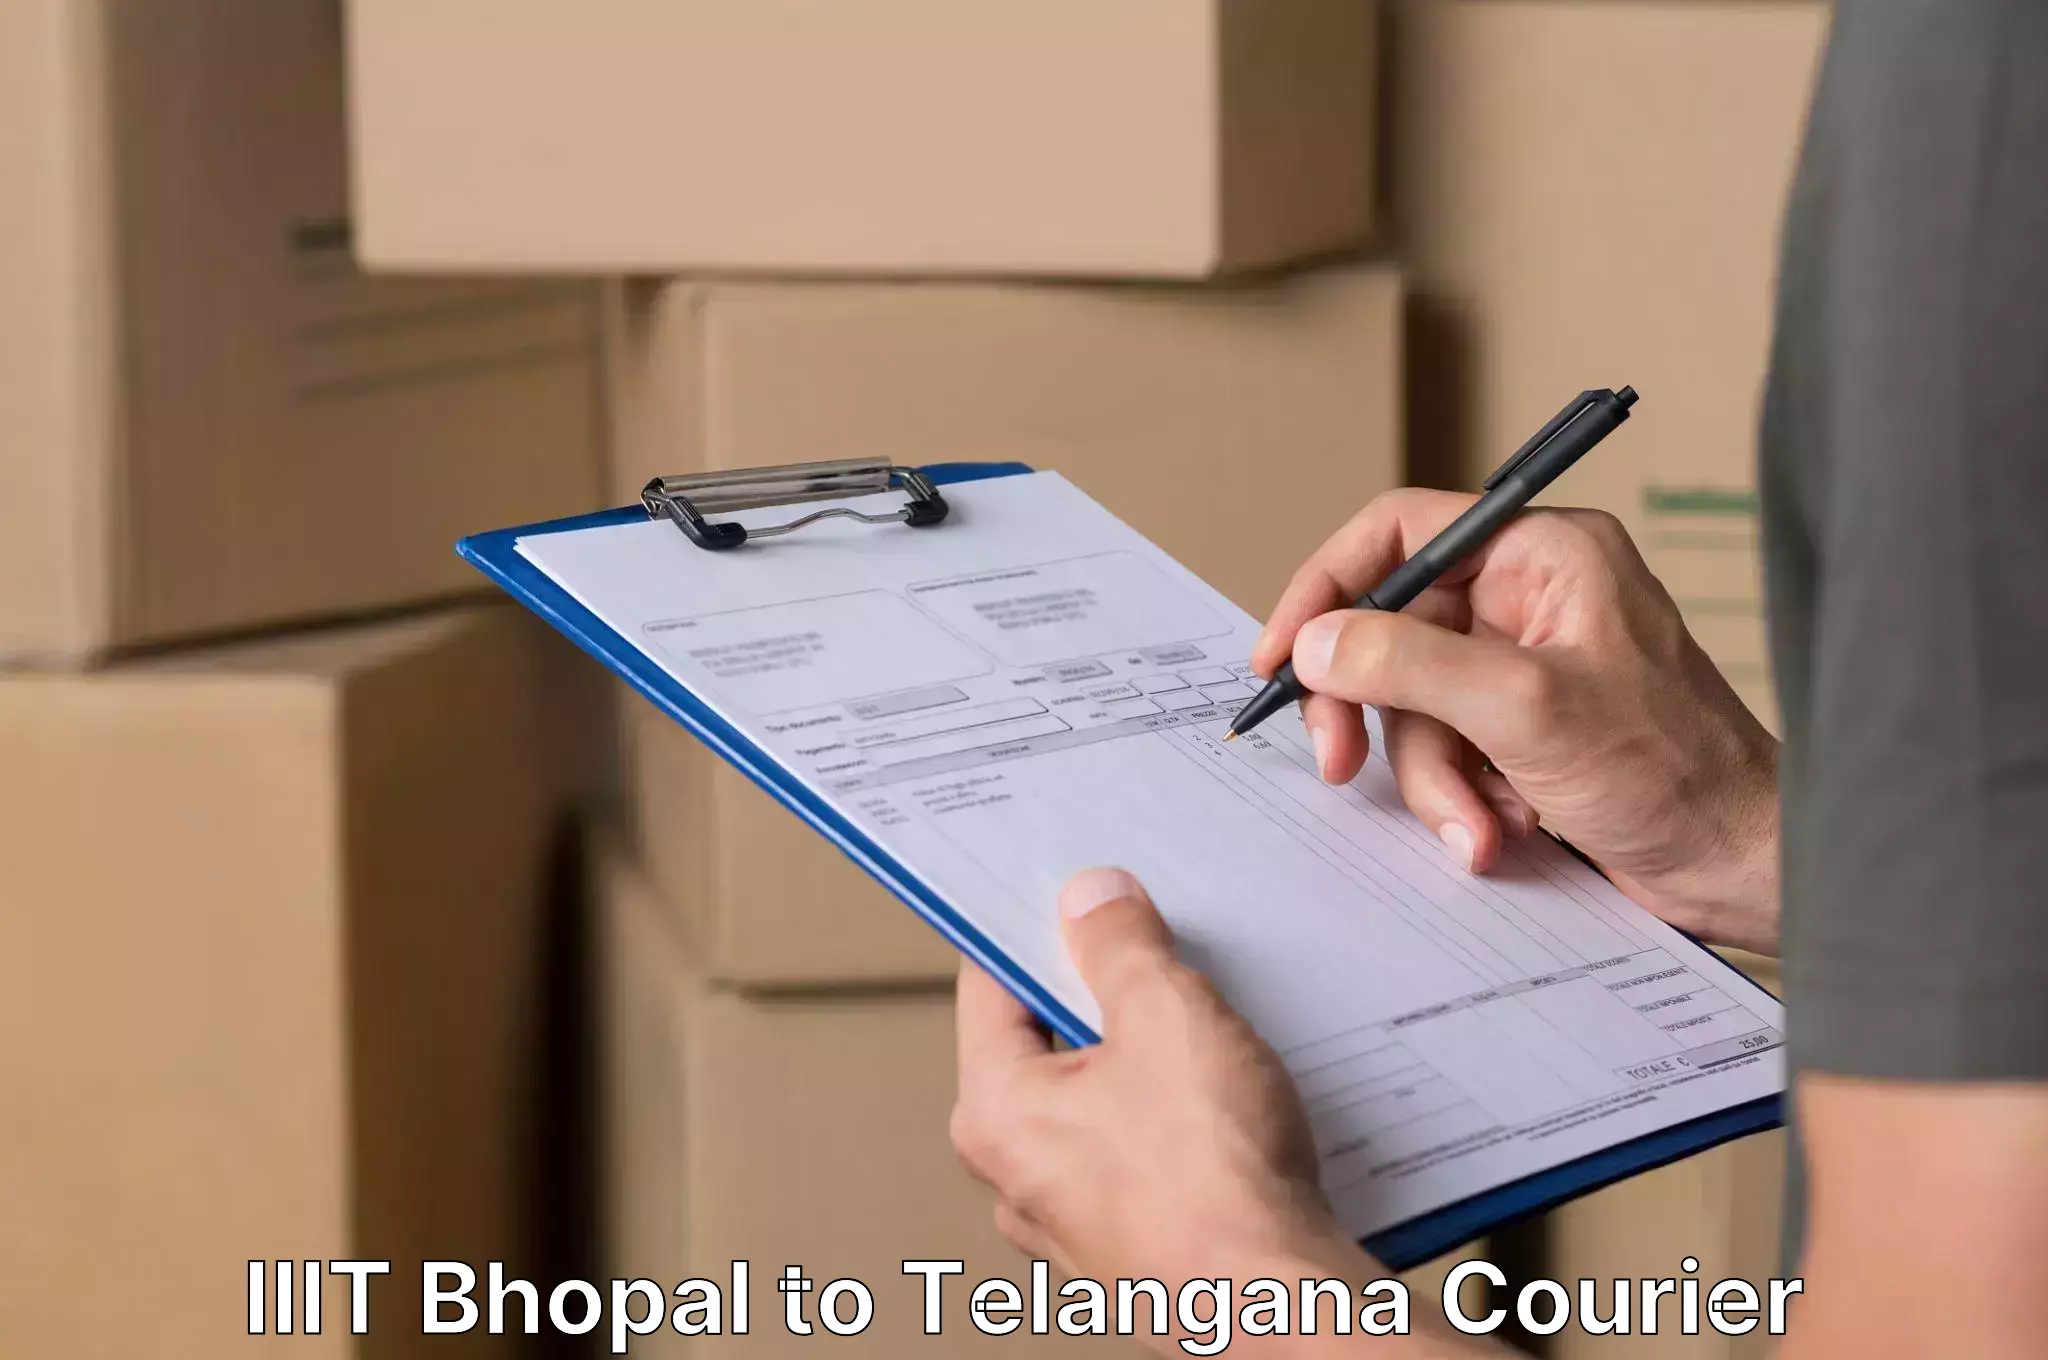 Professional movers IIIT Bhopal to Mahabubnagar